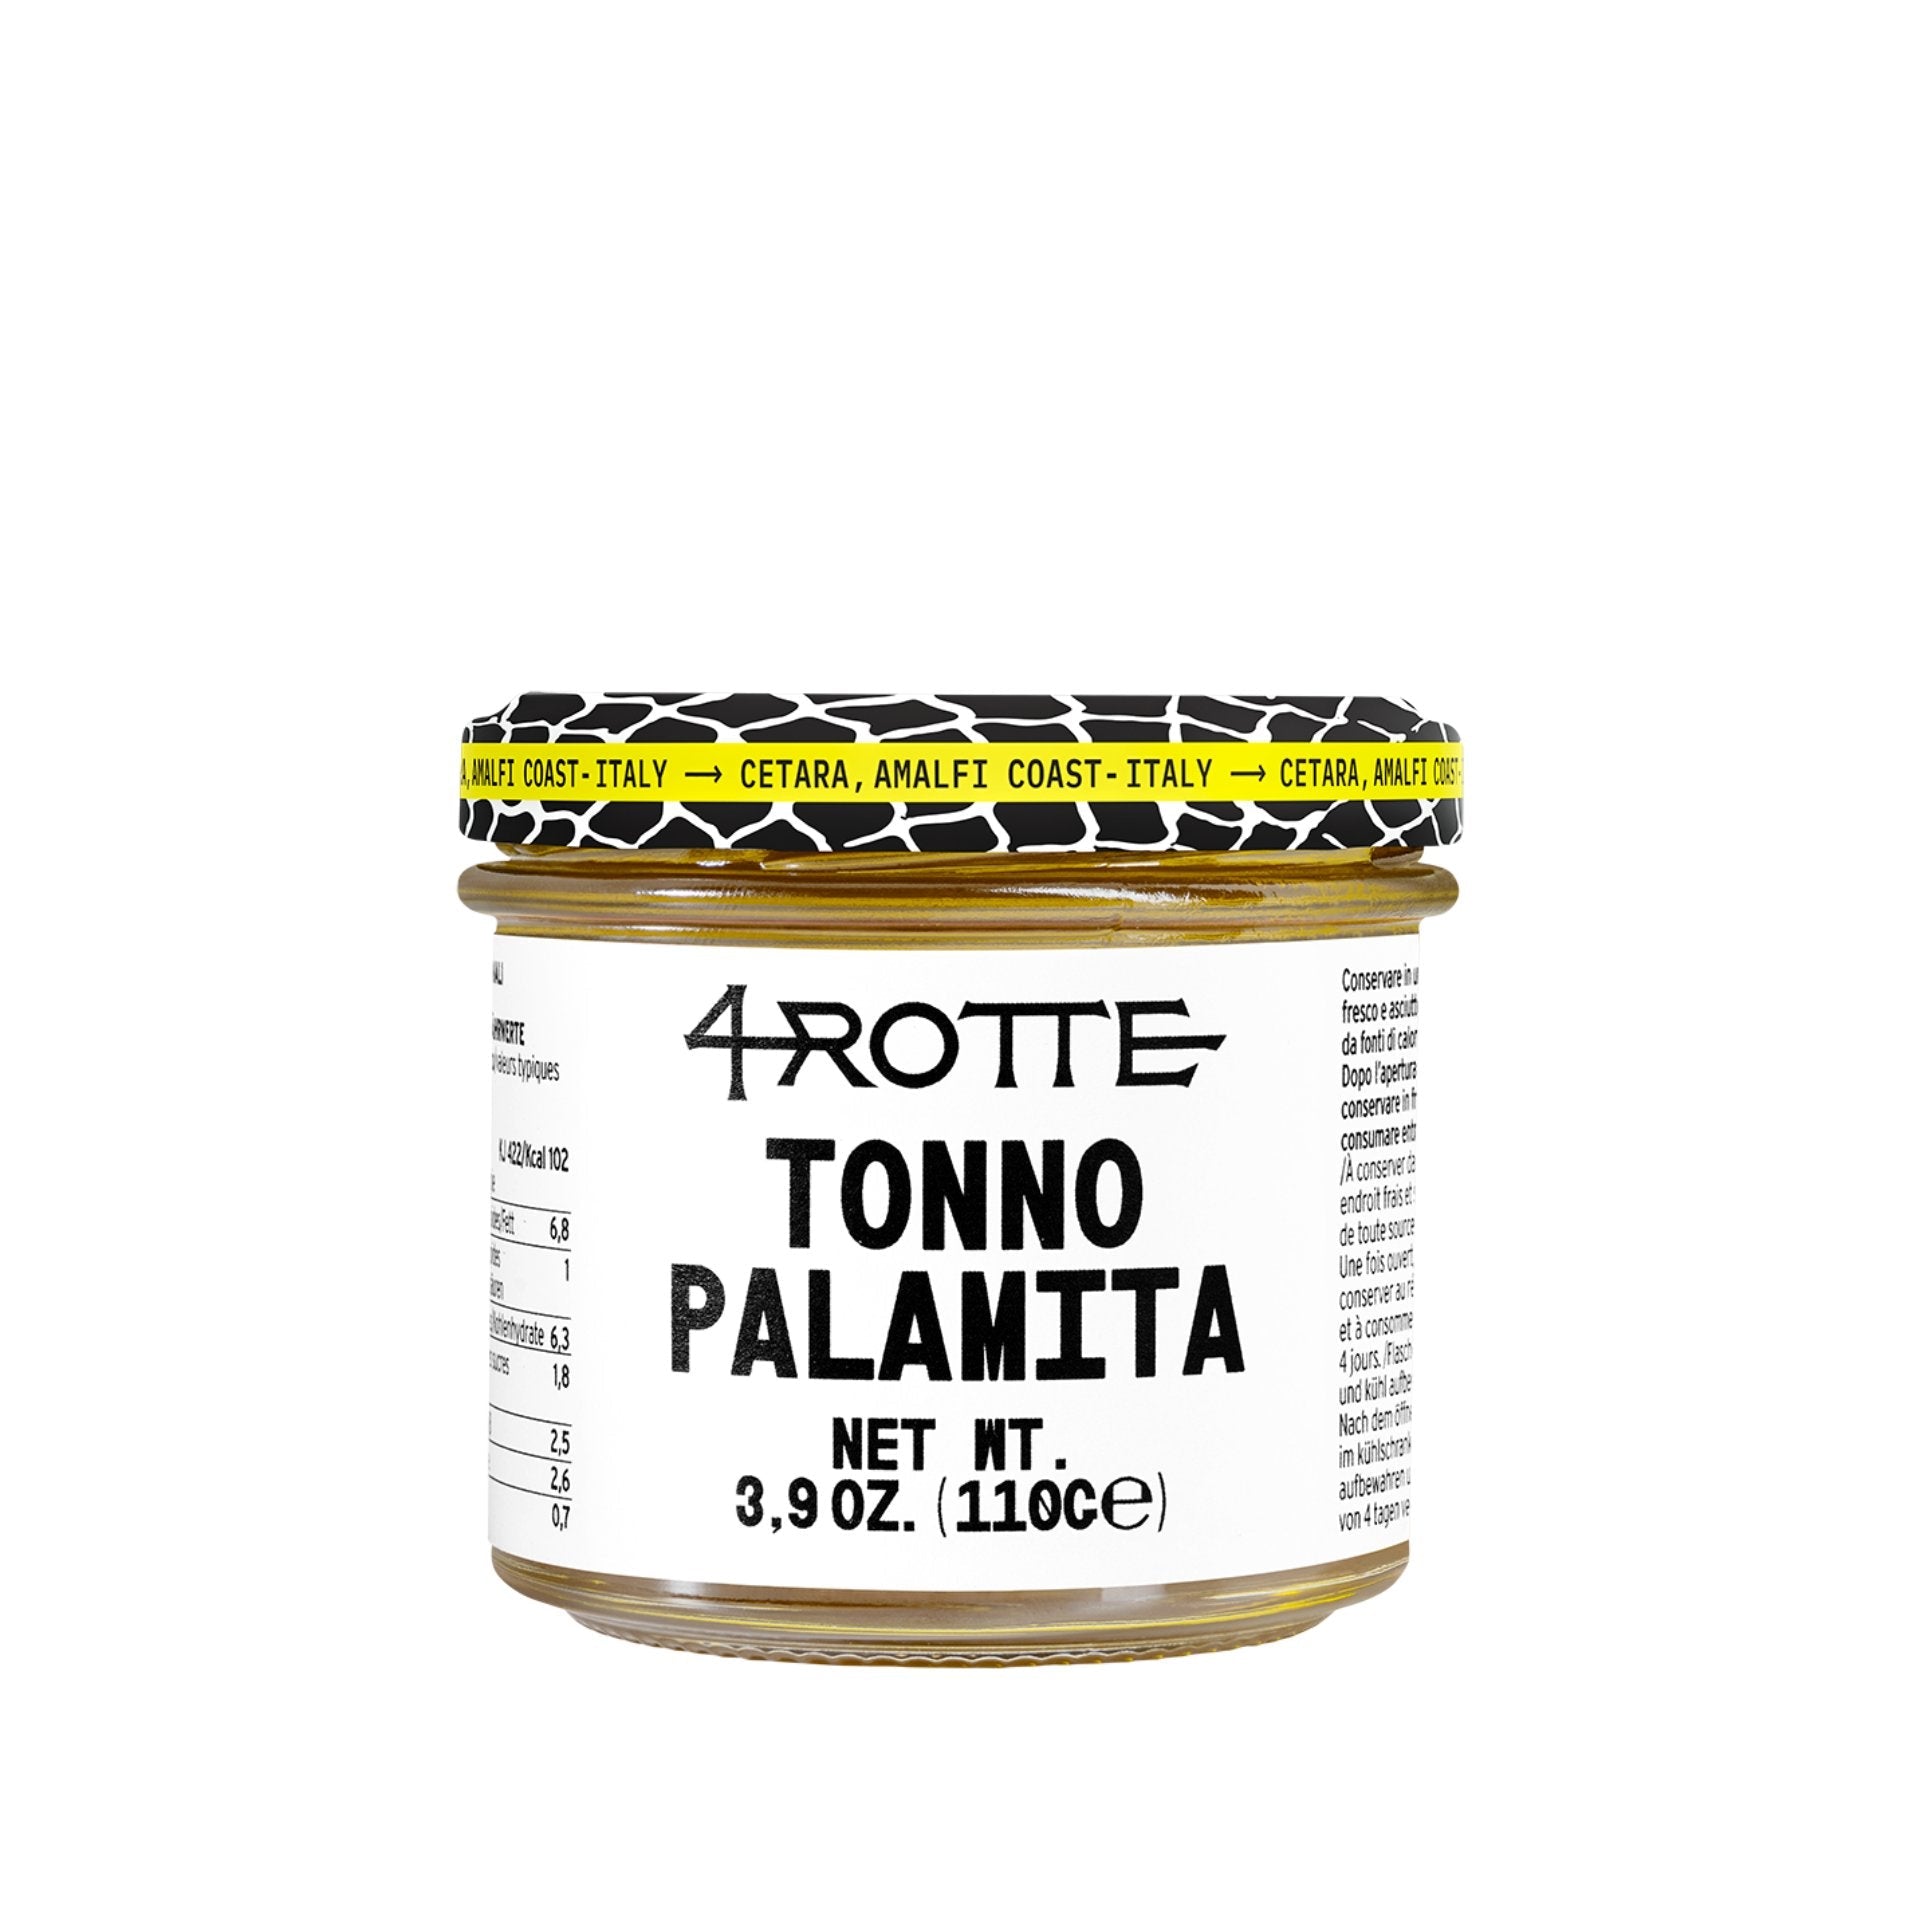 Armatore Palamita Bonito Tuna in Olive Oil 110g Feast Italy